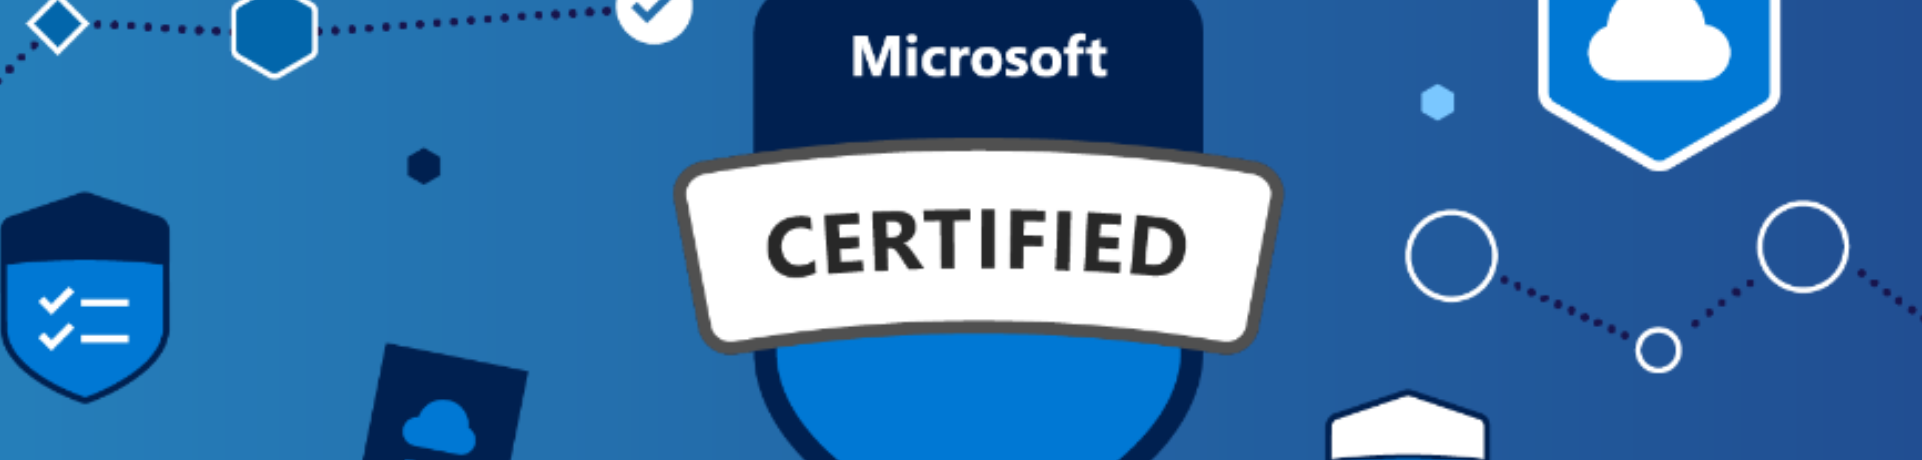 Comment les certifications Microsoft aident votre carrière image selectionnee